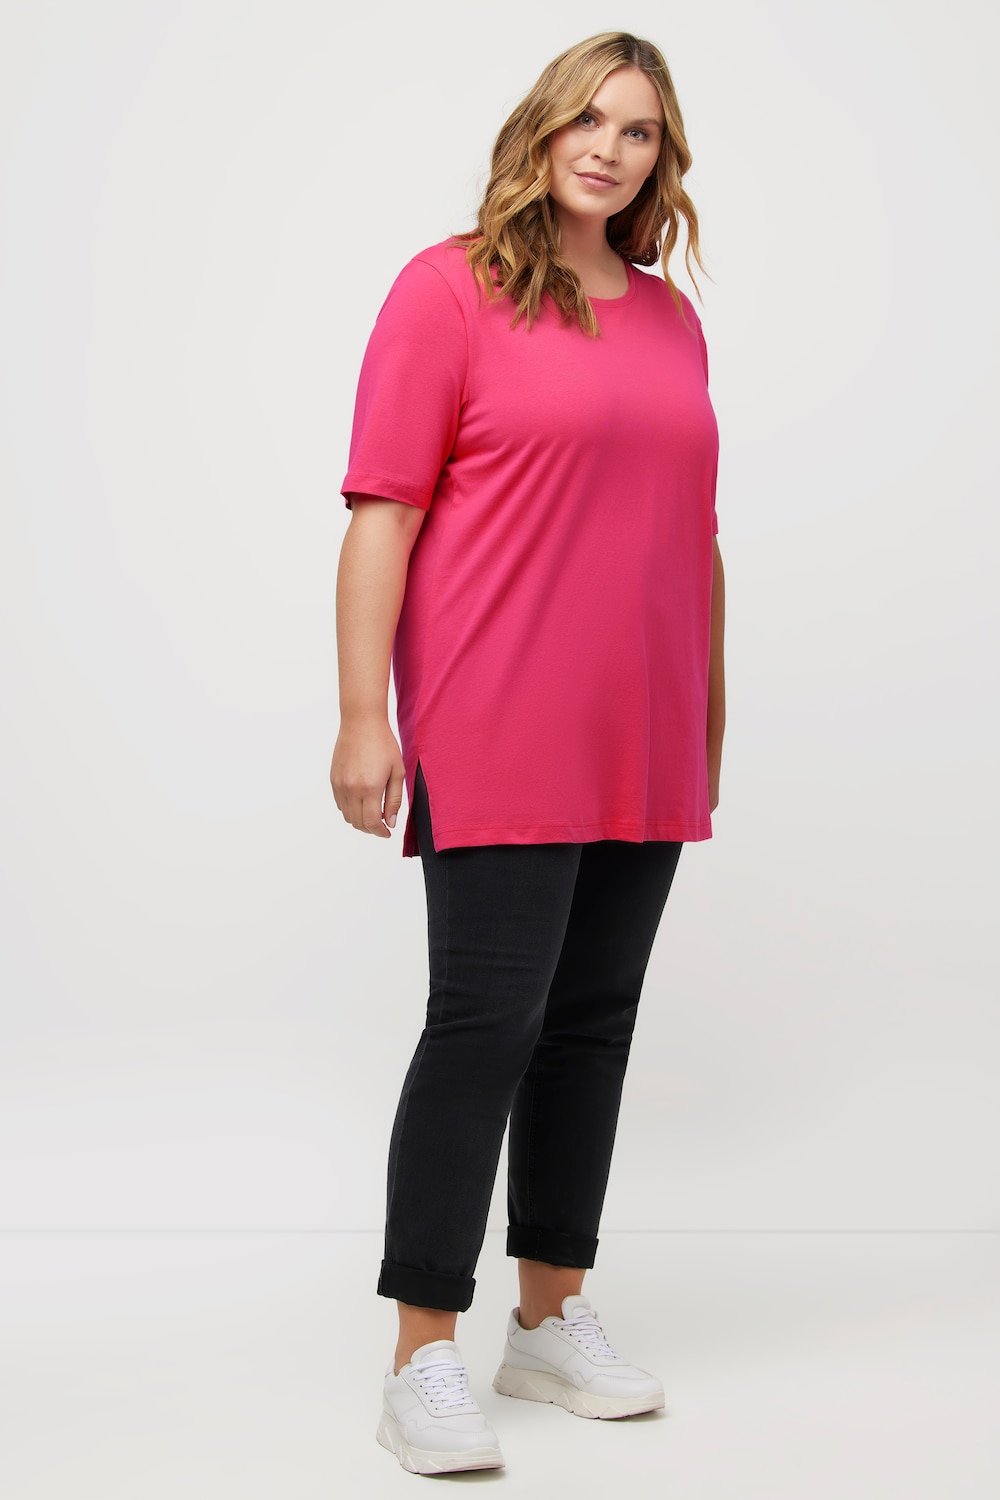 Grote Maten T-shirt, Dames, roze, Maat: 46/48, Katoen/Viscose, Ulla Popken